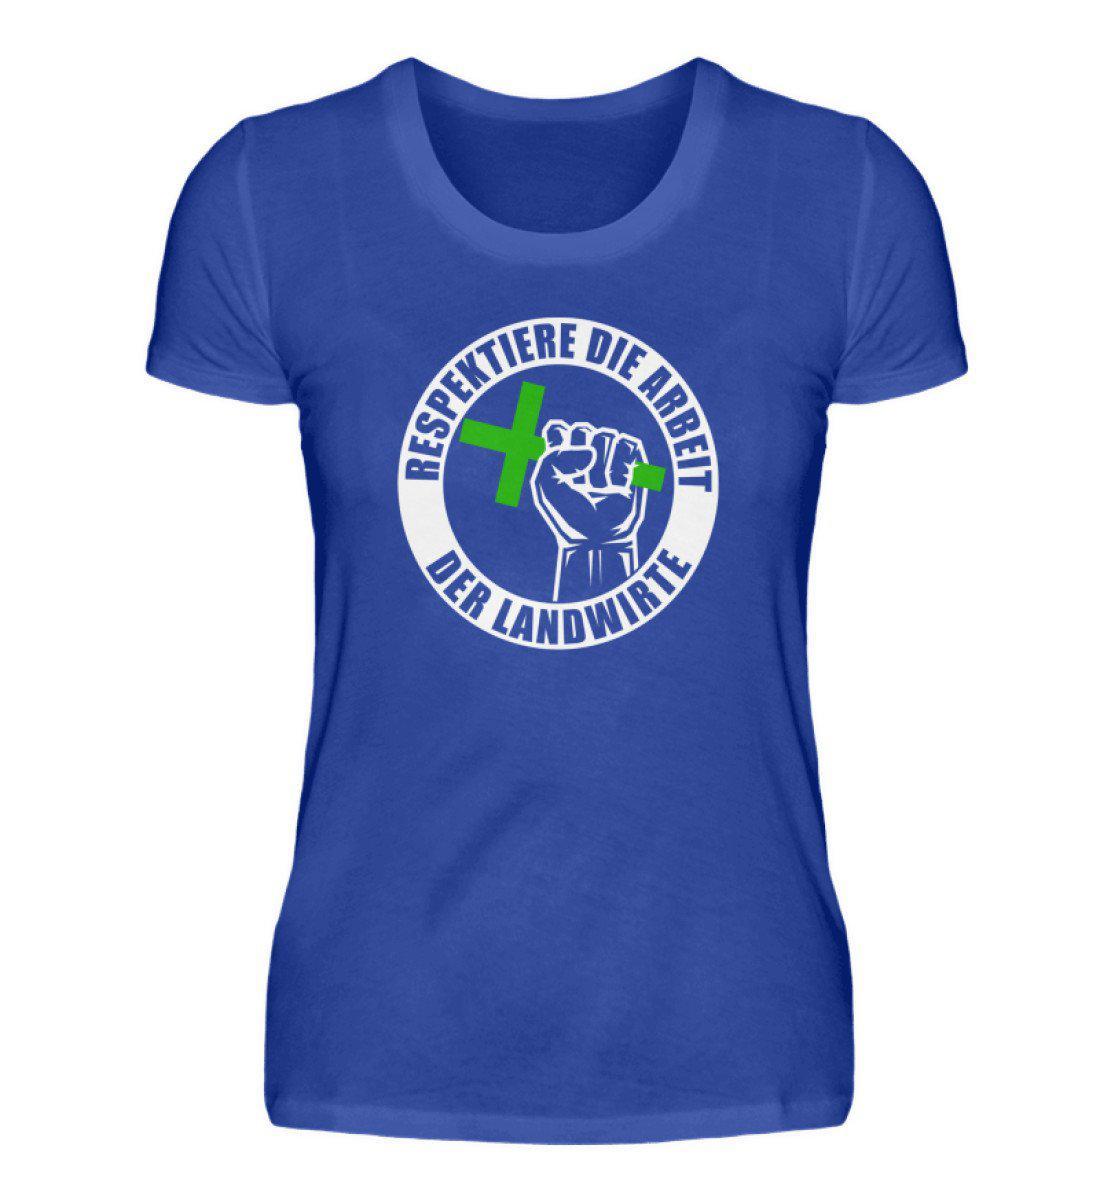 Respektiert Landwirte · Damen T-Shirt-Damen Basic T-Shirt-Neon Blue-S-Agrarstarz